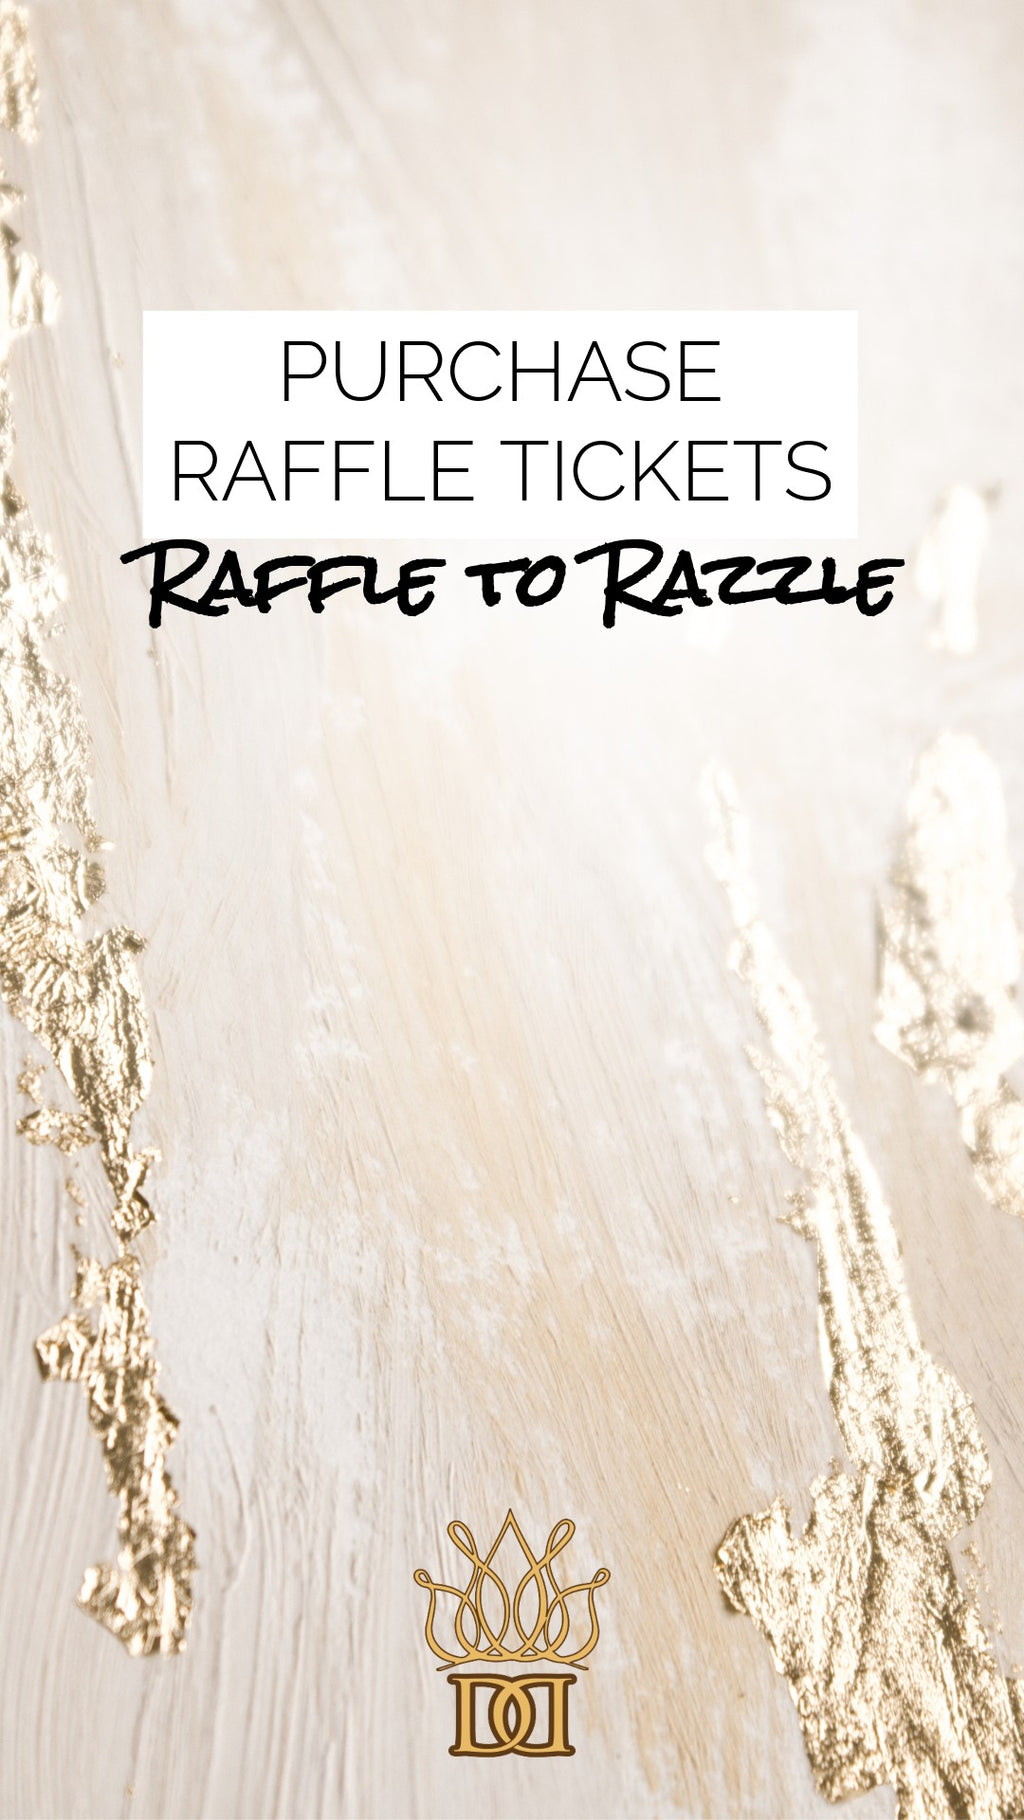 Raffle to Razzle Prize draw